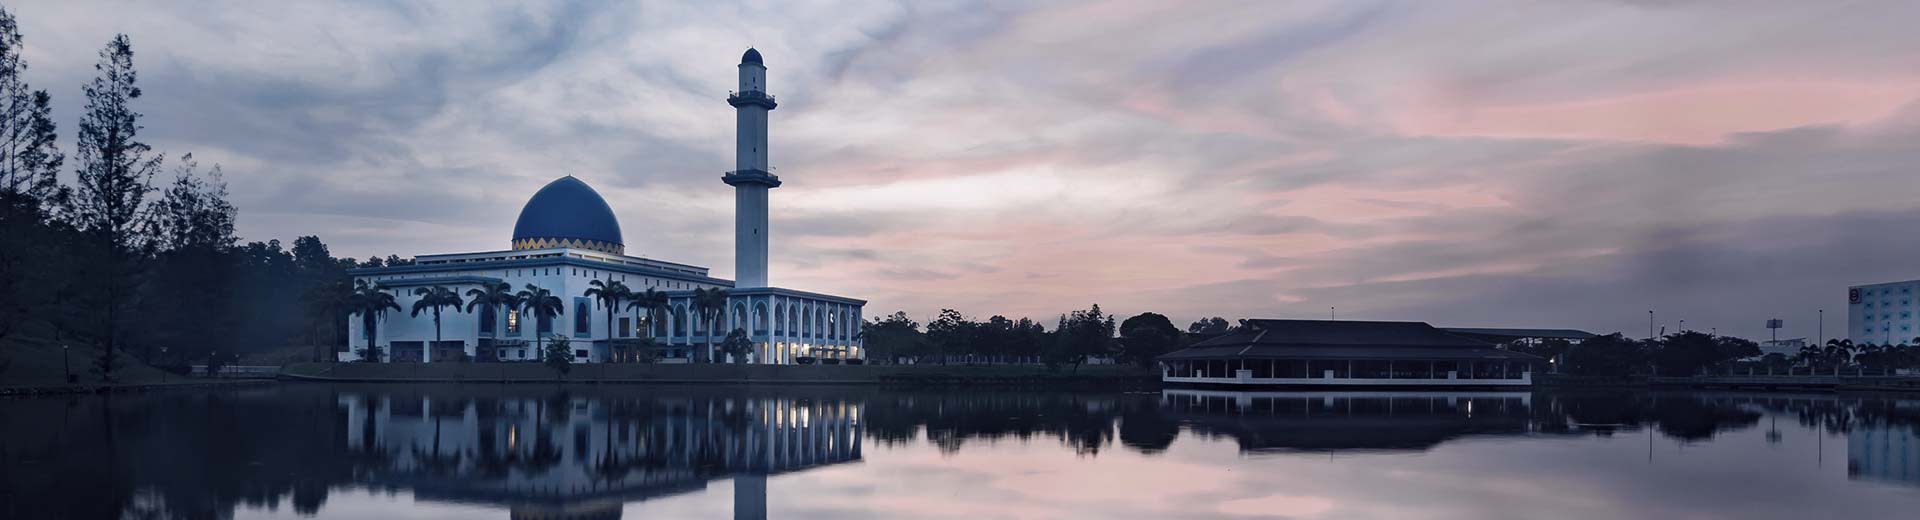 Une belle mosquée silhouettée contre le soleil couchant à Kajang.